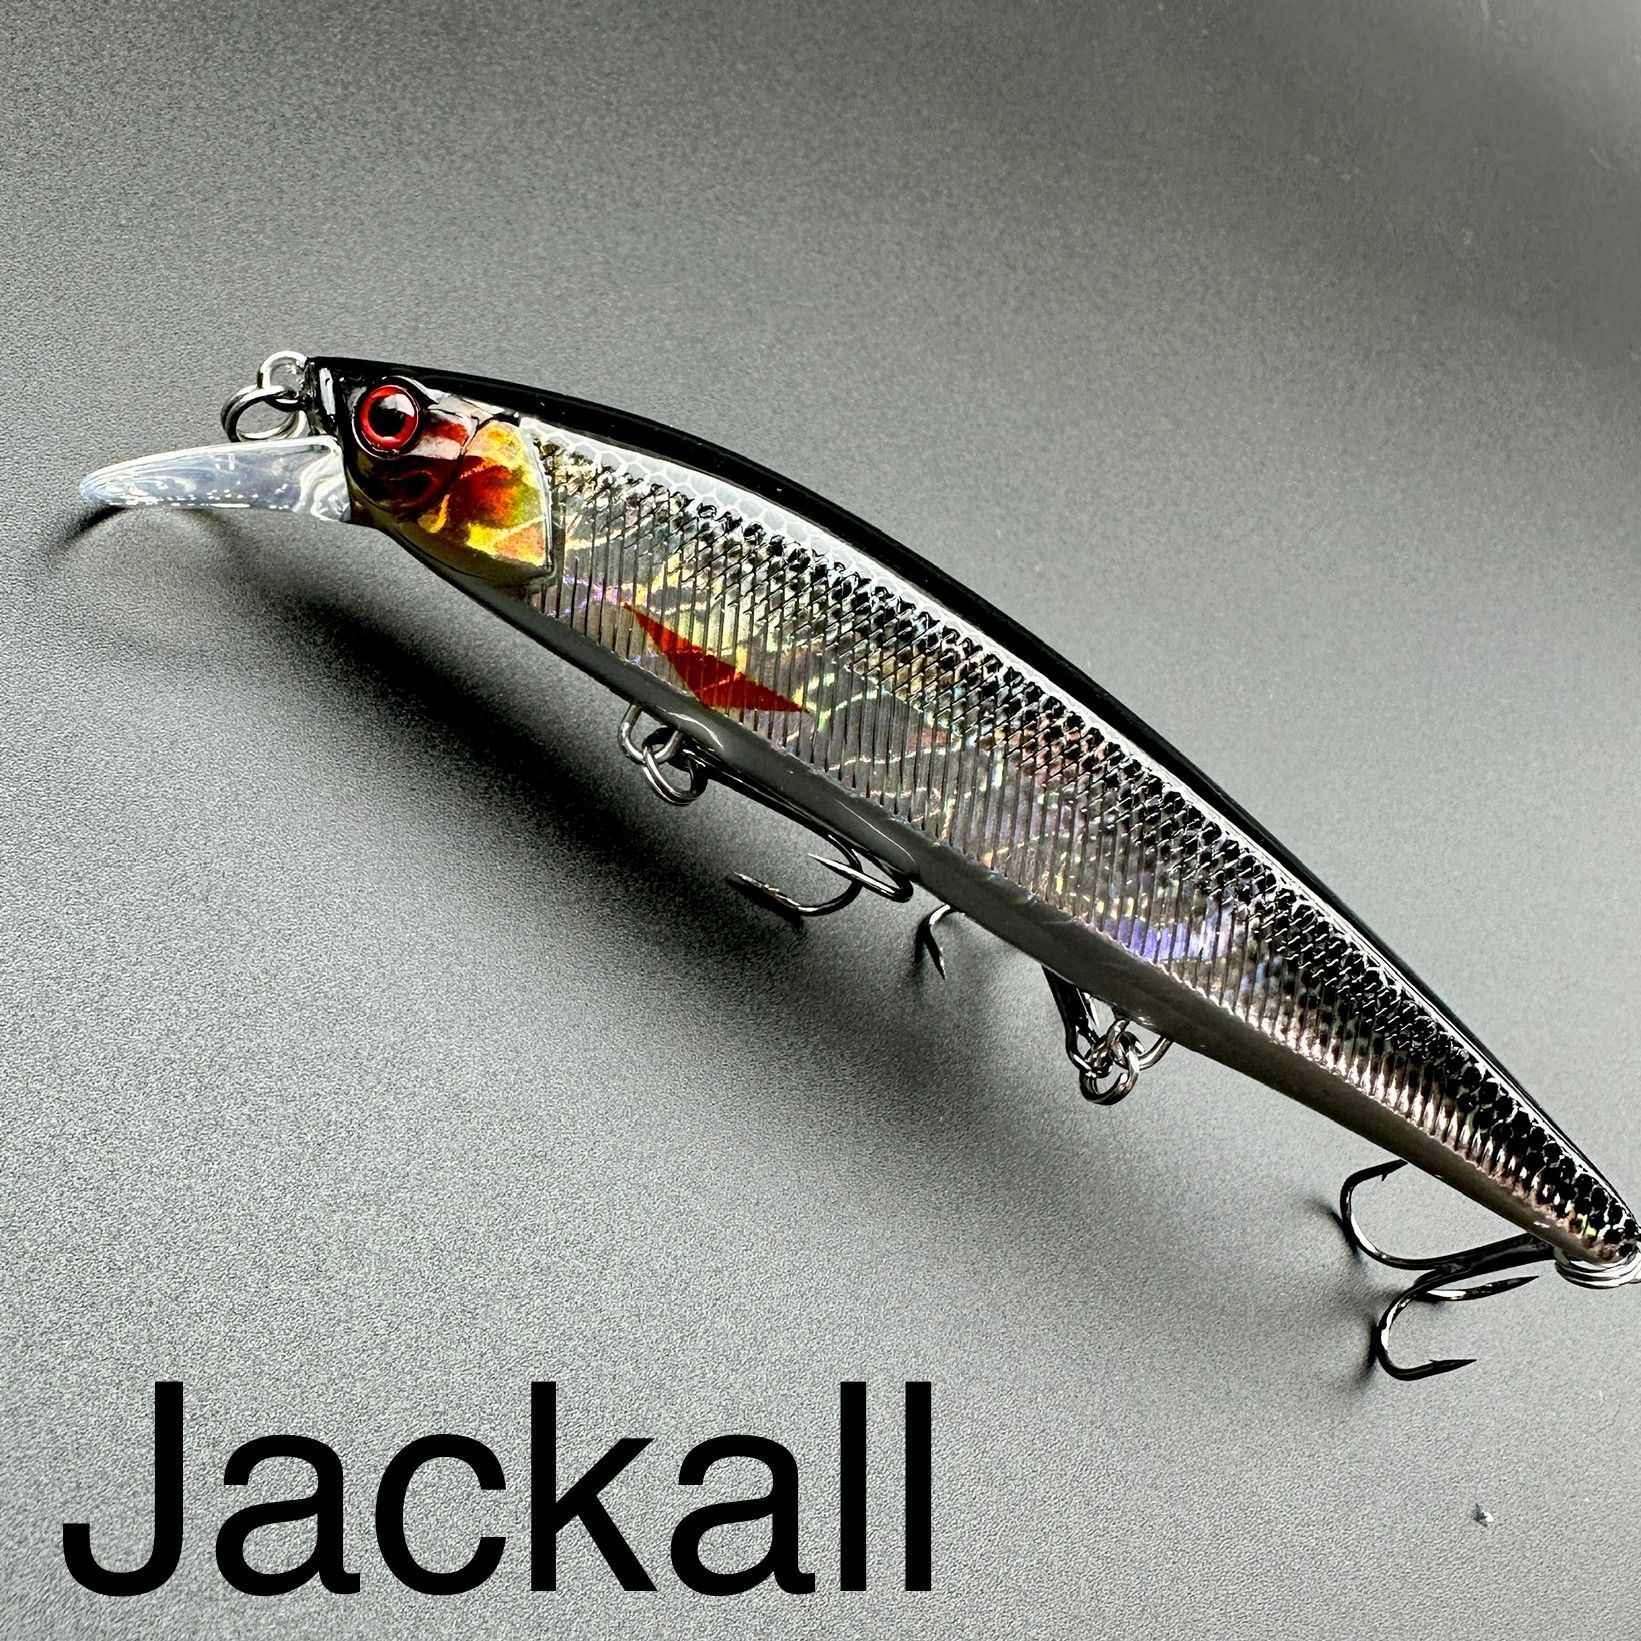 Воблер для рыбалки Jackall Rerange 110MR Jerkbait 4 1/3 inch Deeper Diving  Rerange Japanese Lure - 184582019267 - купить на .com (США) с доставкой  в Украину